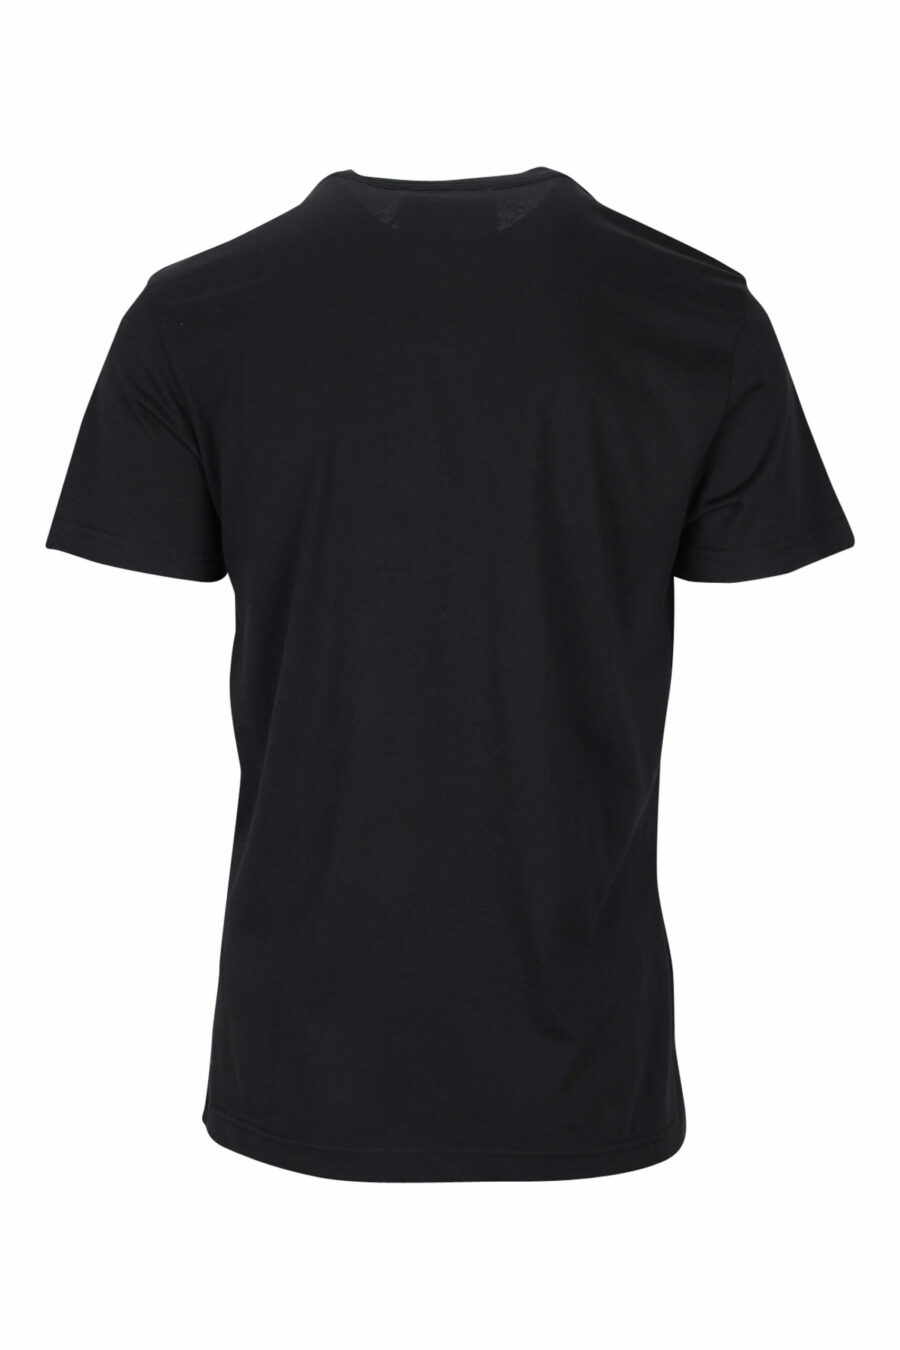 T-shirt noir avec maxilogue classique doré brillant - 8052019456783 1 scaled